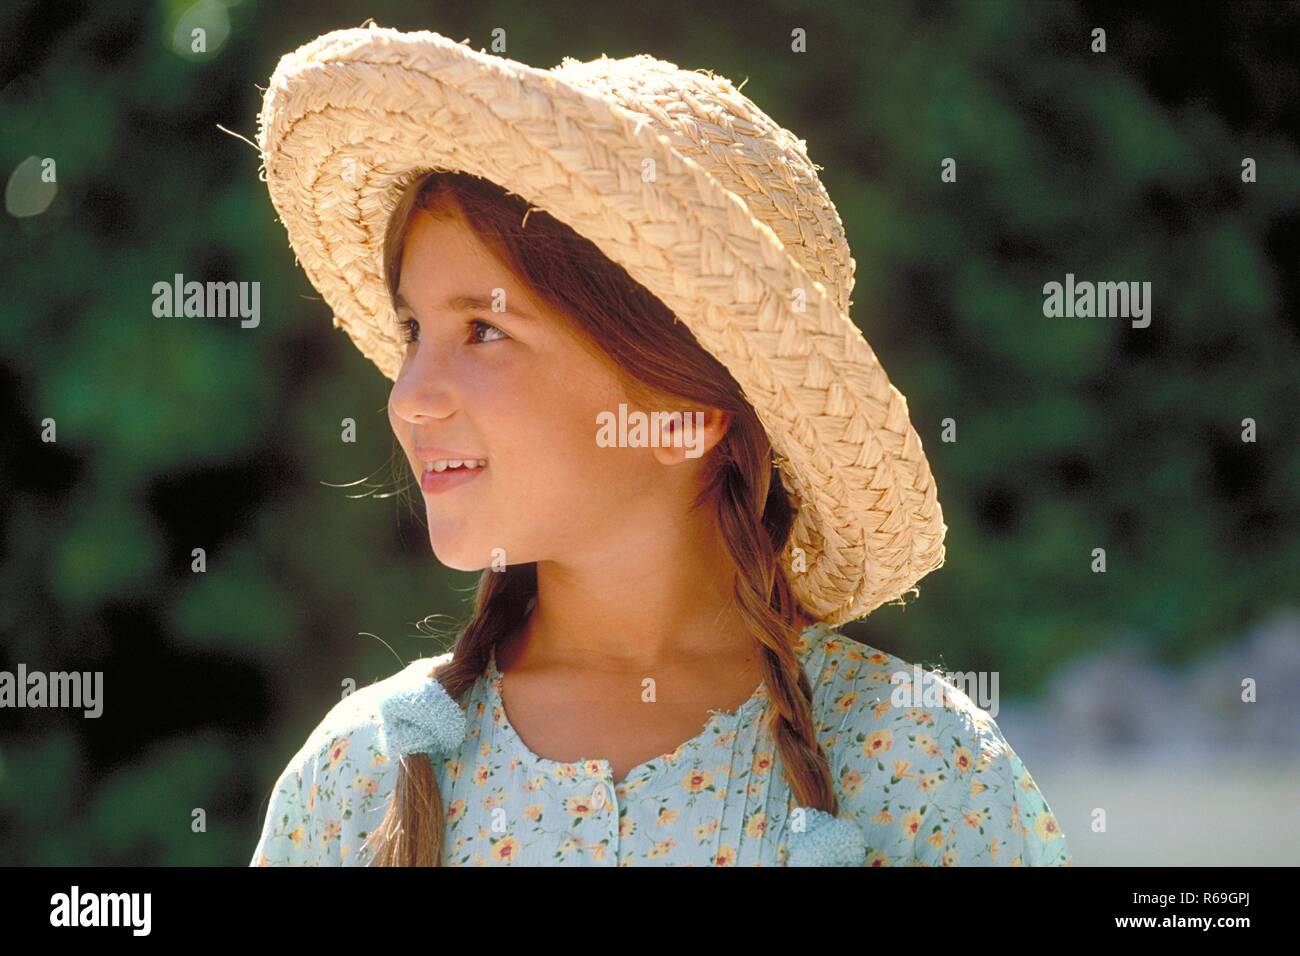 Ritratto, all'aperto, Profil von Maedchen, 8 Jahre alt, mit braunen geflochtenen Zoepfen Haaren bekleidet mit hellblau gebluemten Kleid und Strohhut Foto Stock